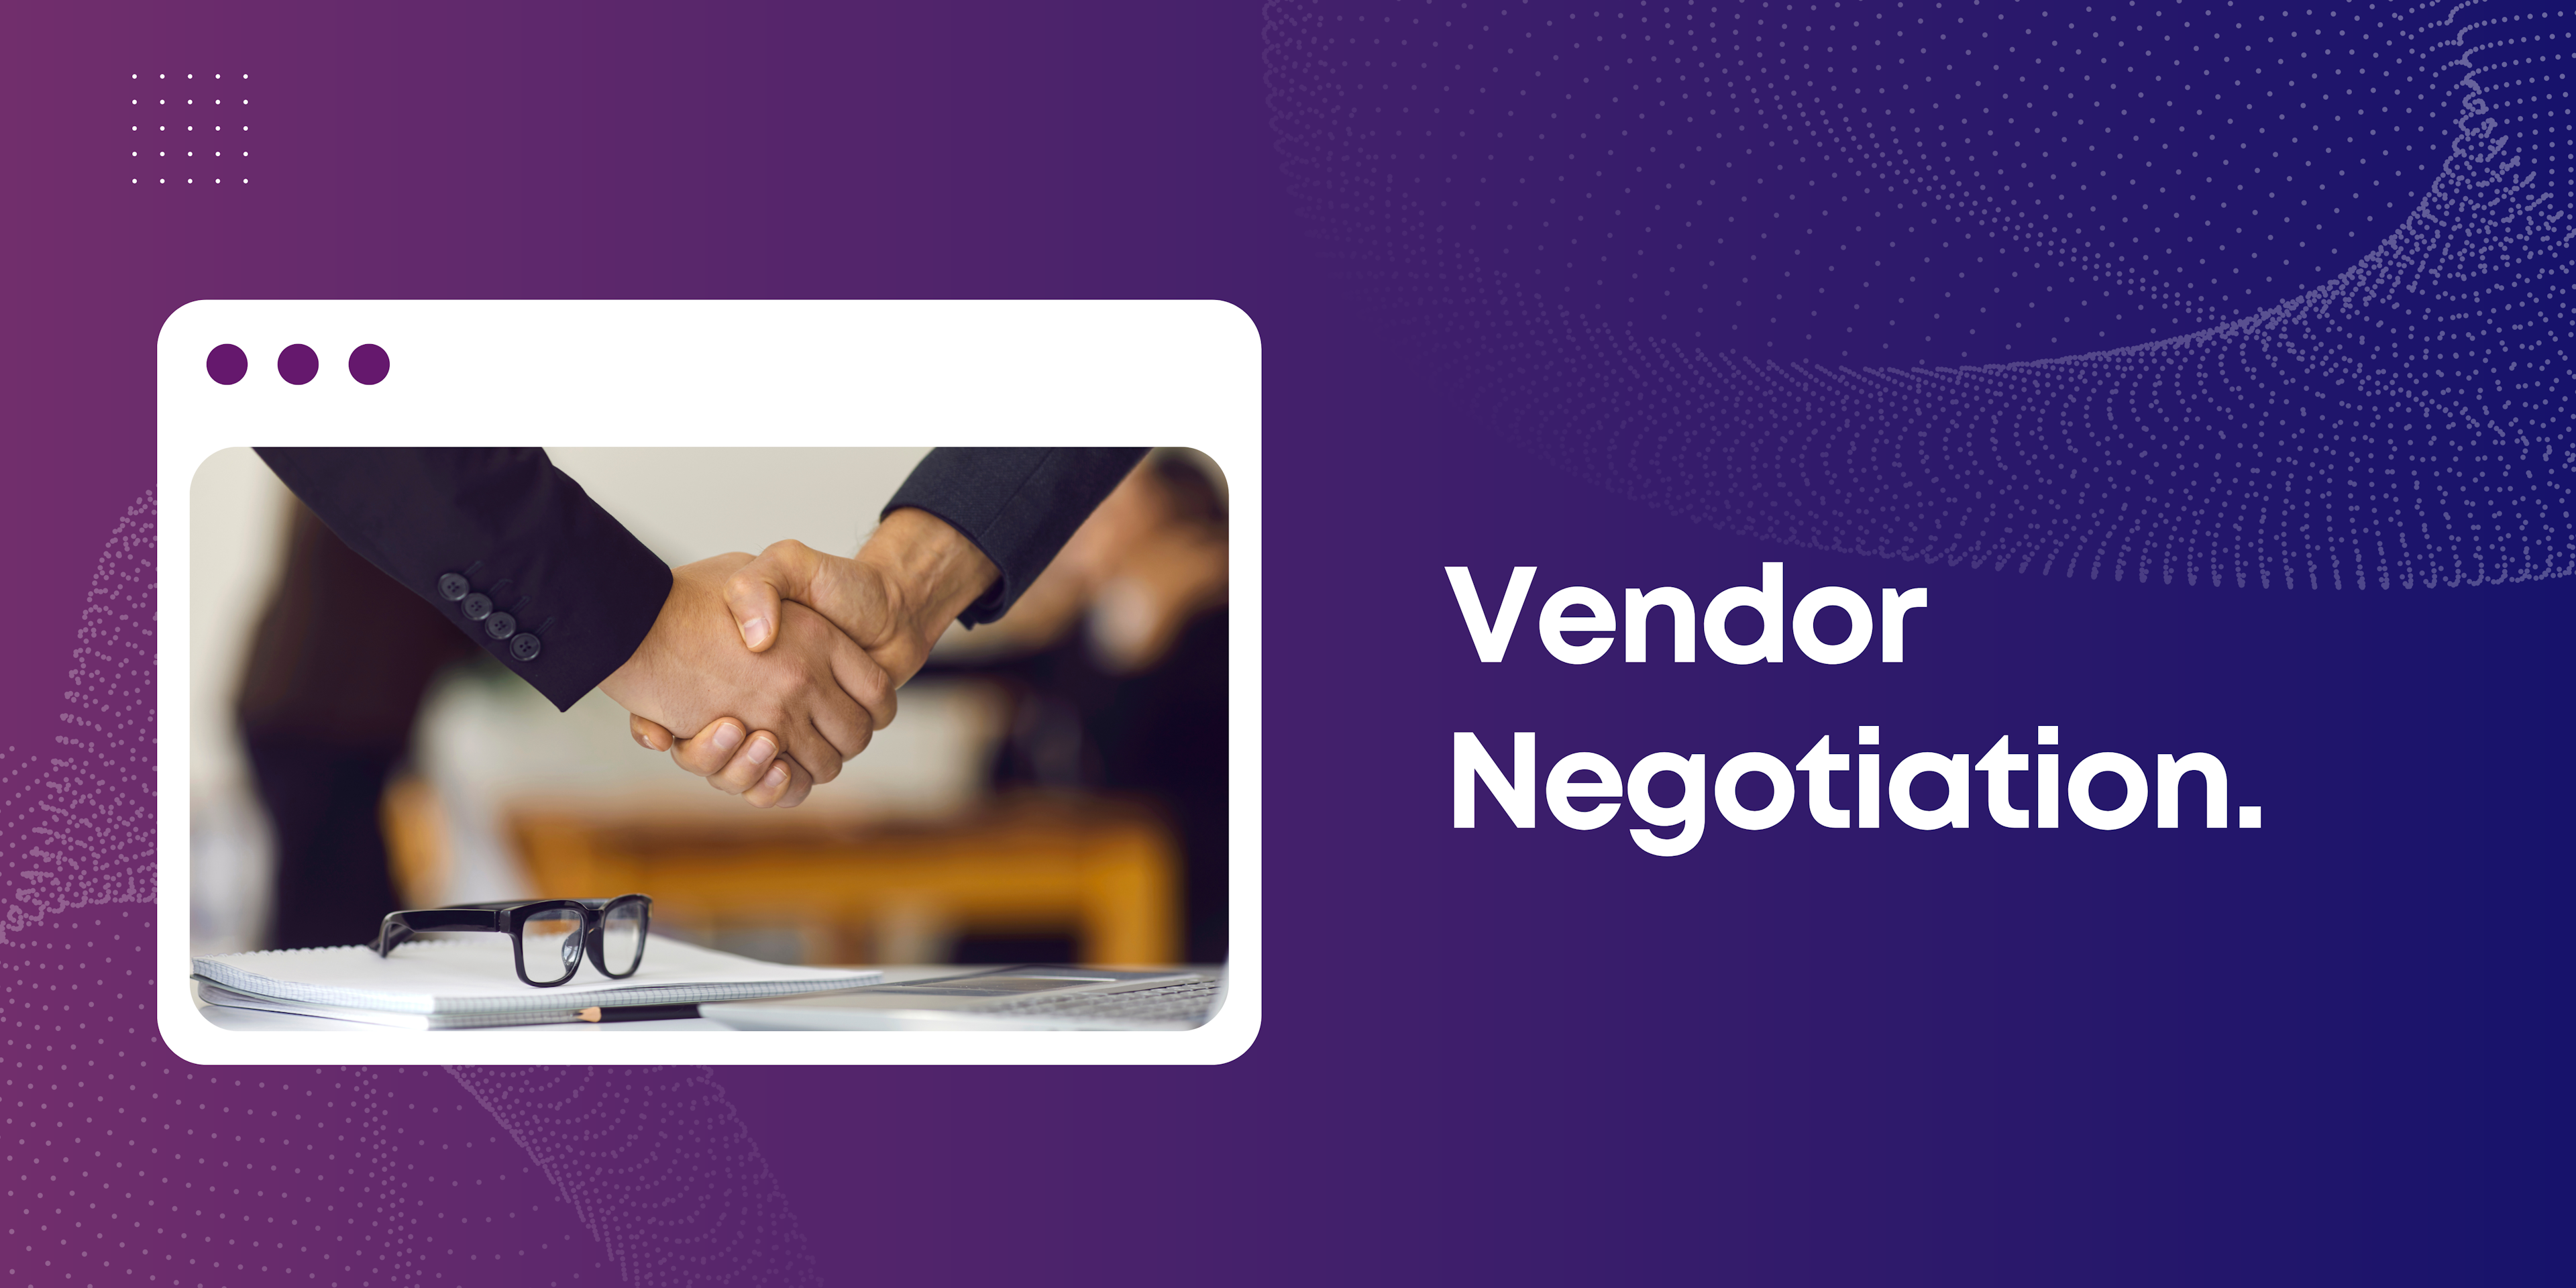 Vendor Negotiation in Accounts Payable